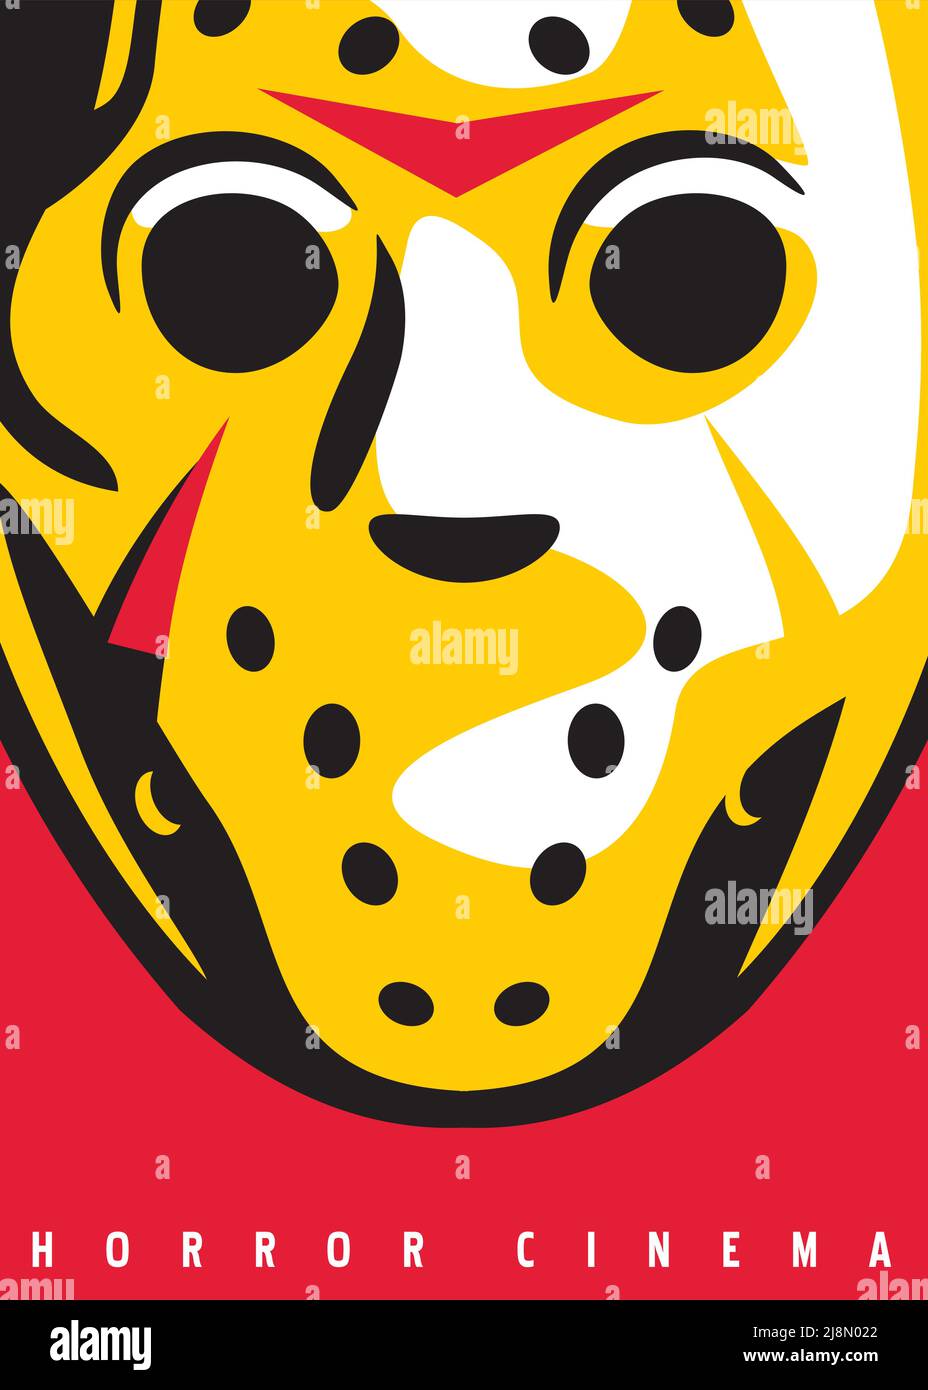 Grafica con maschera horror stilizzata. Film horror poster cinema festival con hockey goalkeeper maschera illustrazione. Poster artistico vettoriale. Illustrazione Vettoriale